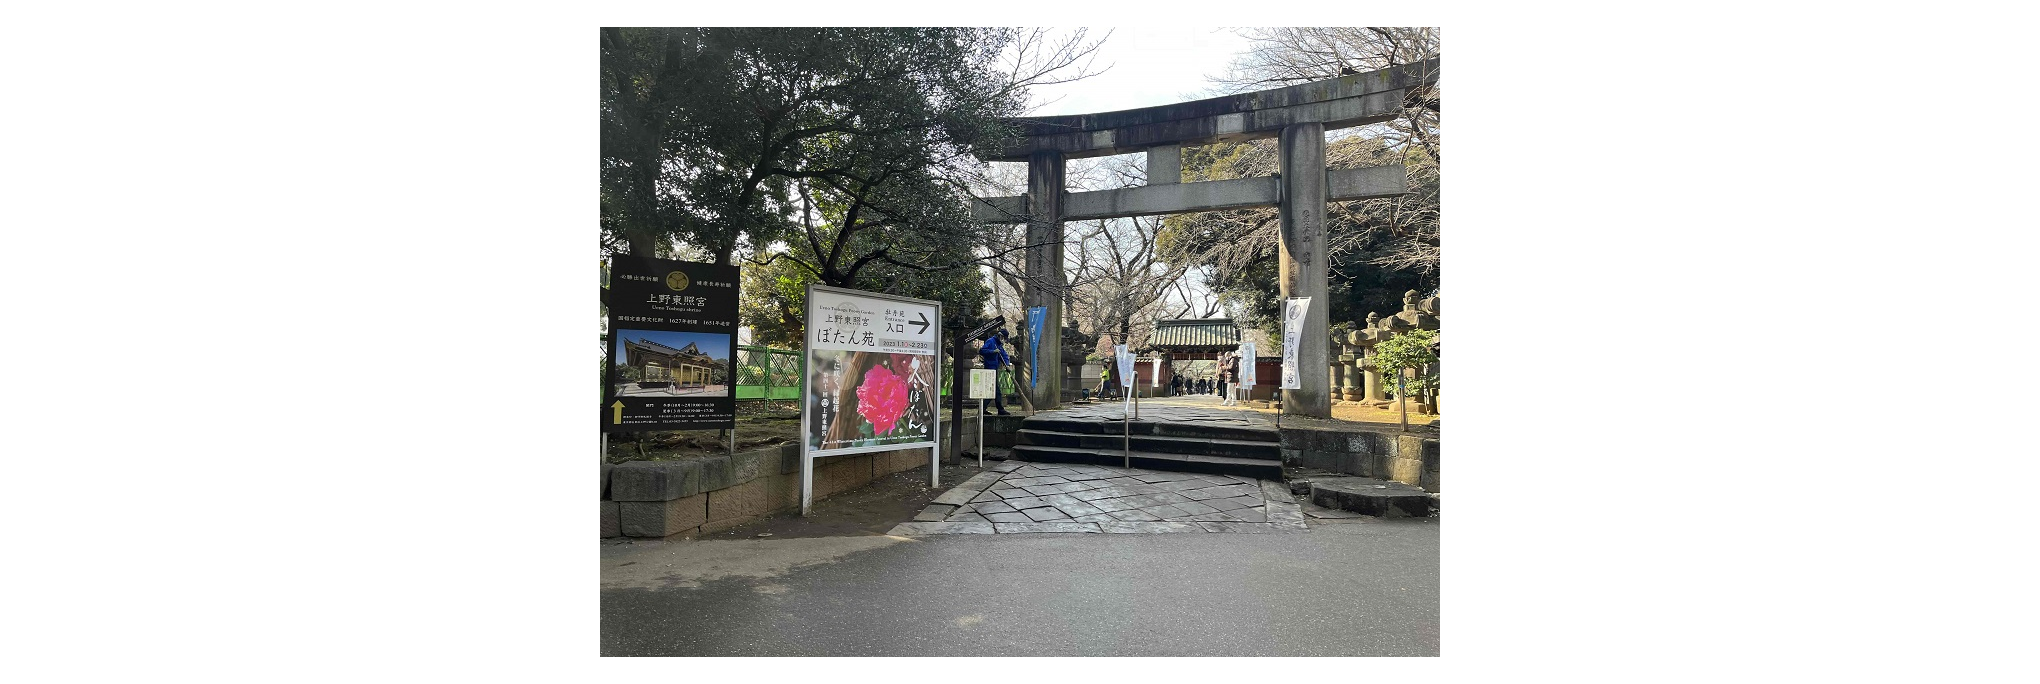 上野東照宮とぼたん苑